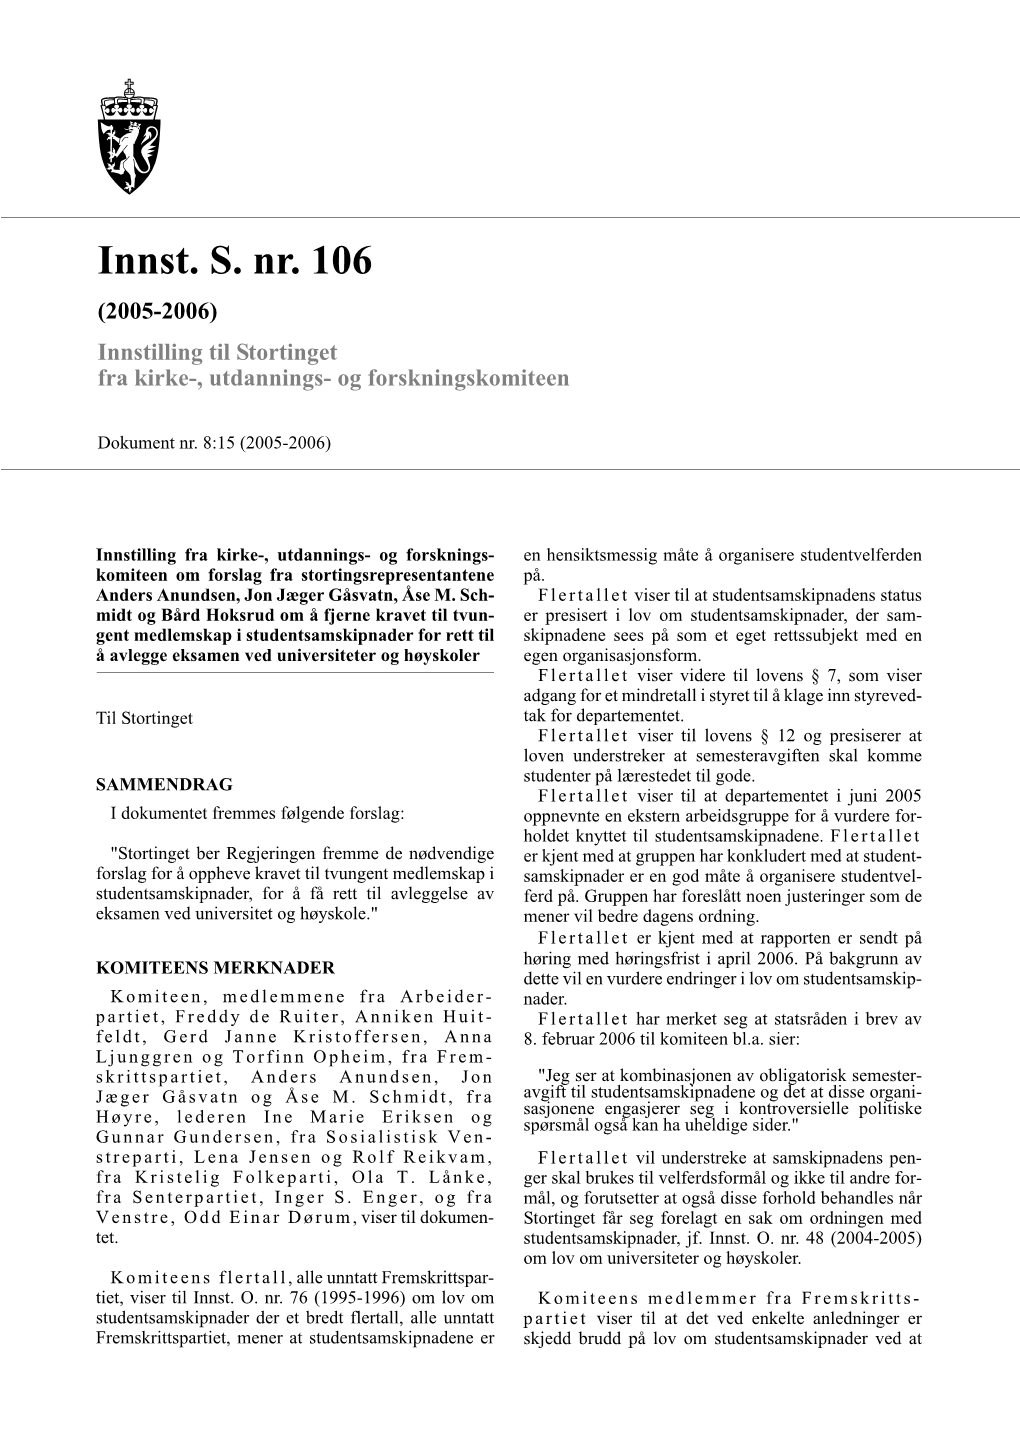 Innst. S. Nr. 106 (2005-2006) Innstilling Til Stortinget Fra Kirke-, Utdannings- Og Forskningskomiteen